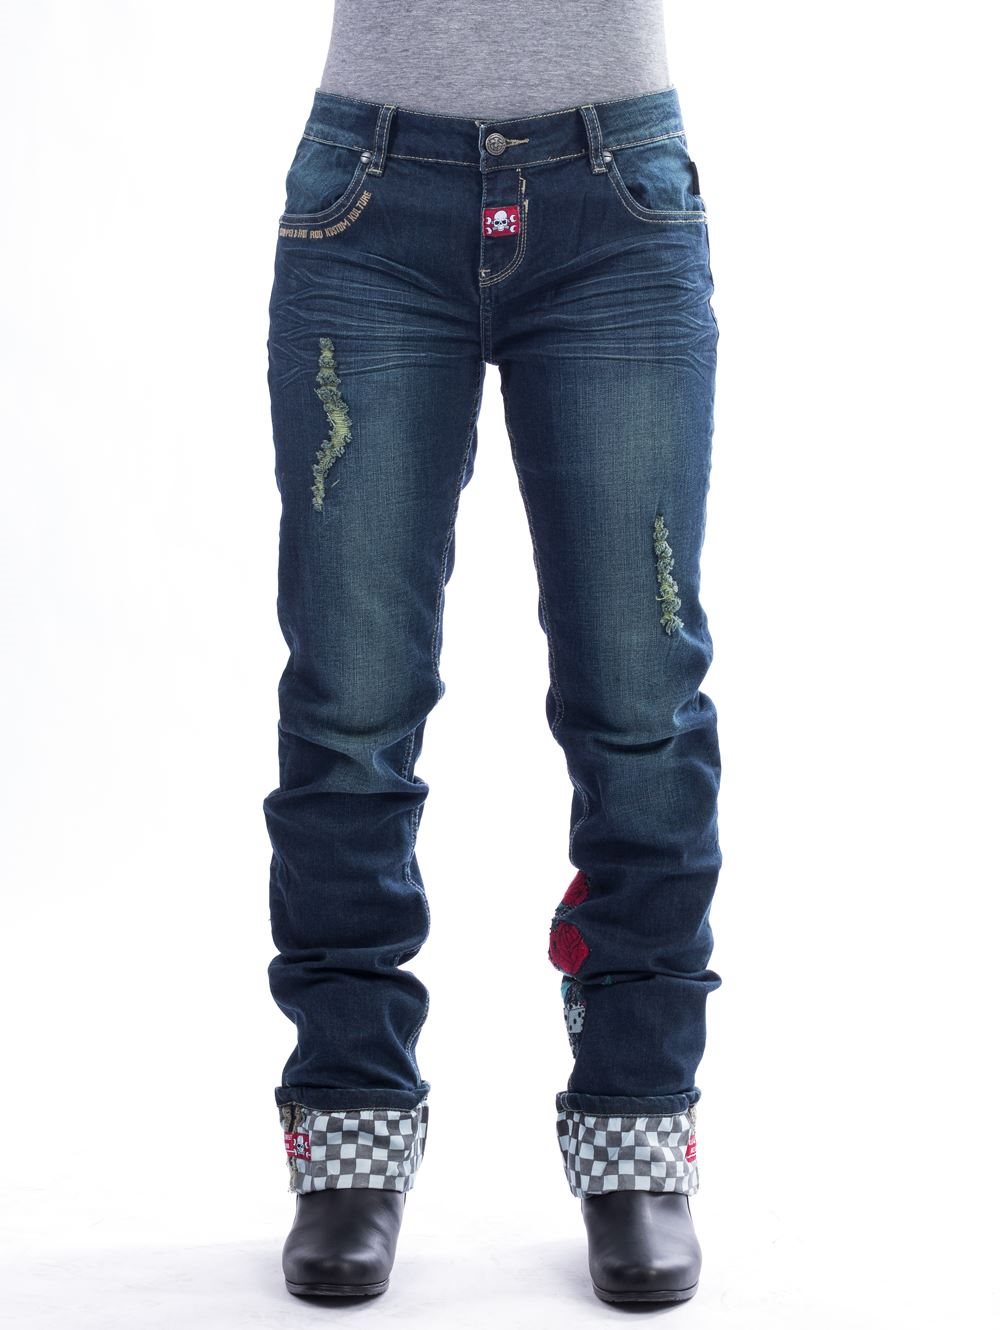 technisch Observatie ongeluk RUSTY PISTONS MONROE Damen Jeans blau 34 um 65,00 EUR - 1000PS Shop - Motor